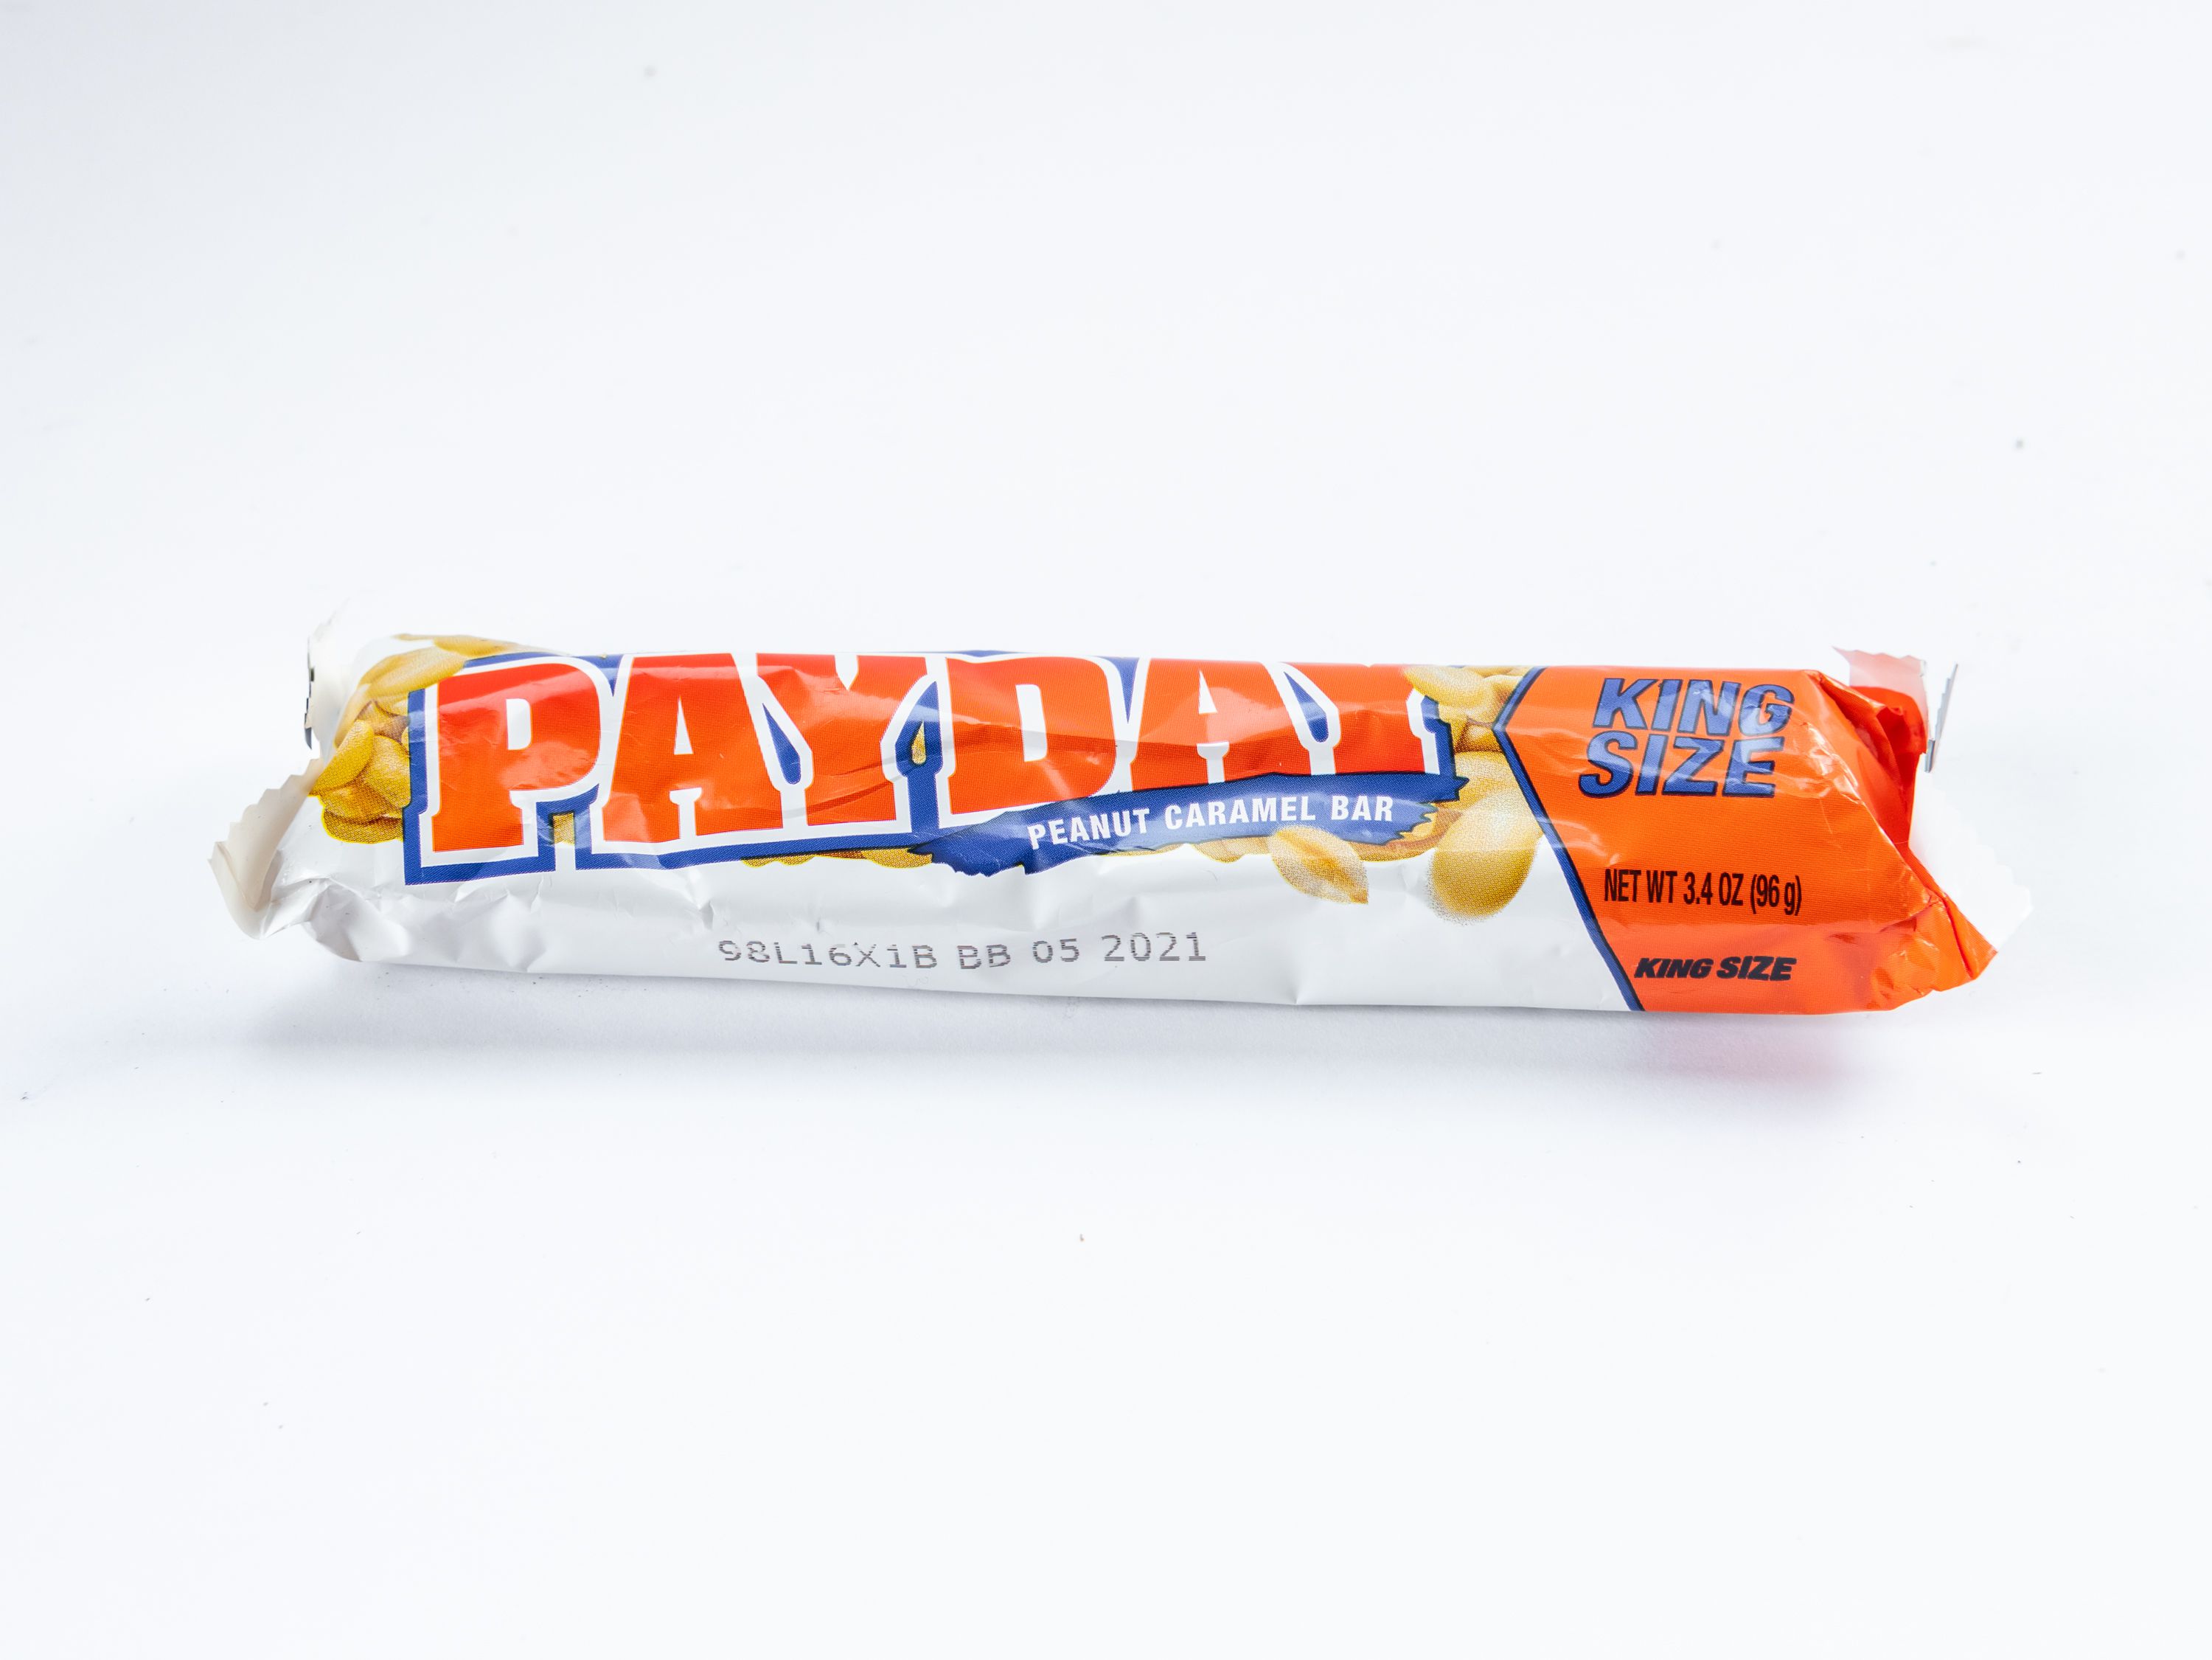 Order Payday King SZ 3.4 oz. food online from Loop store, El Sobrante on bringmethat.com